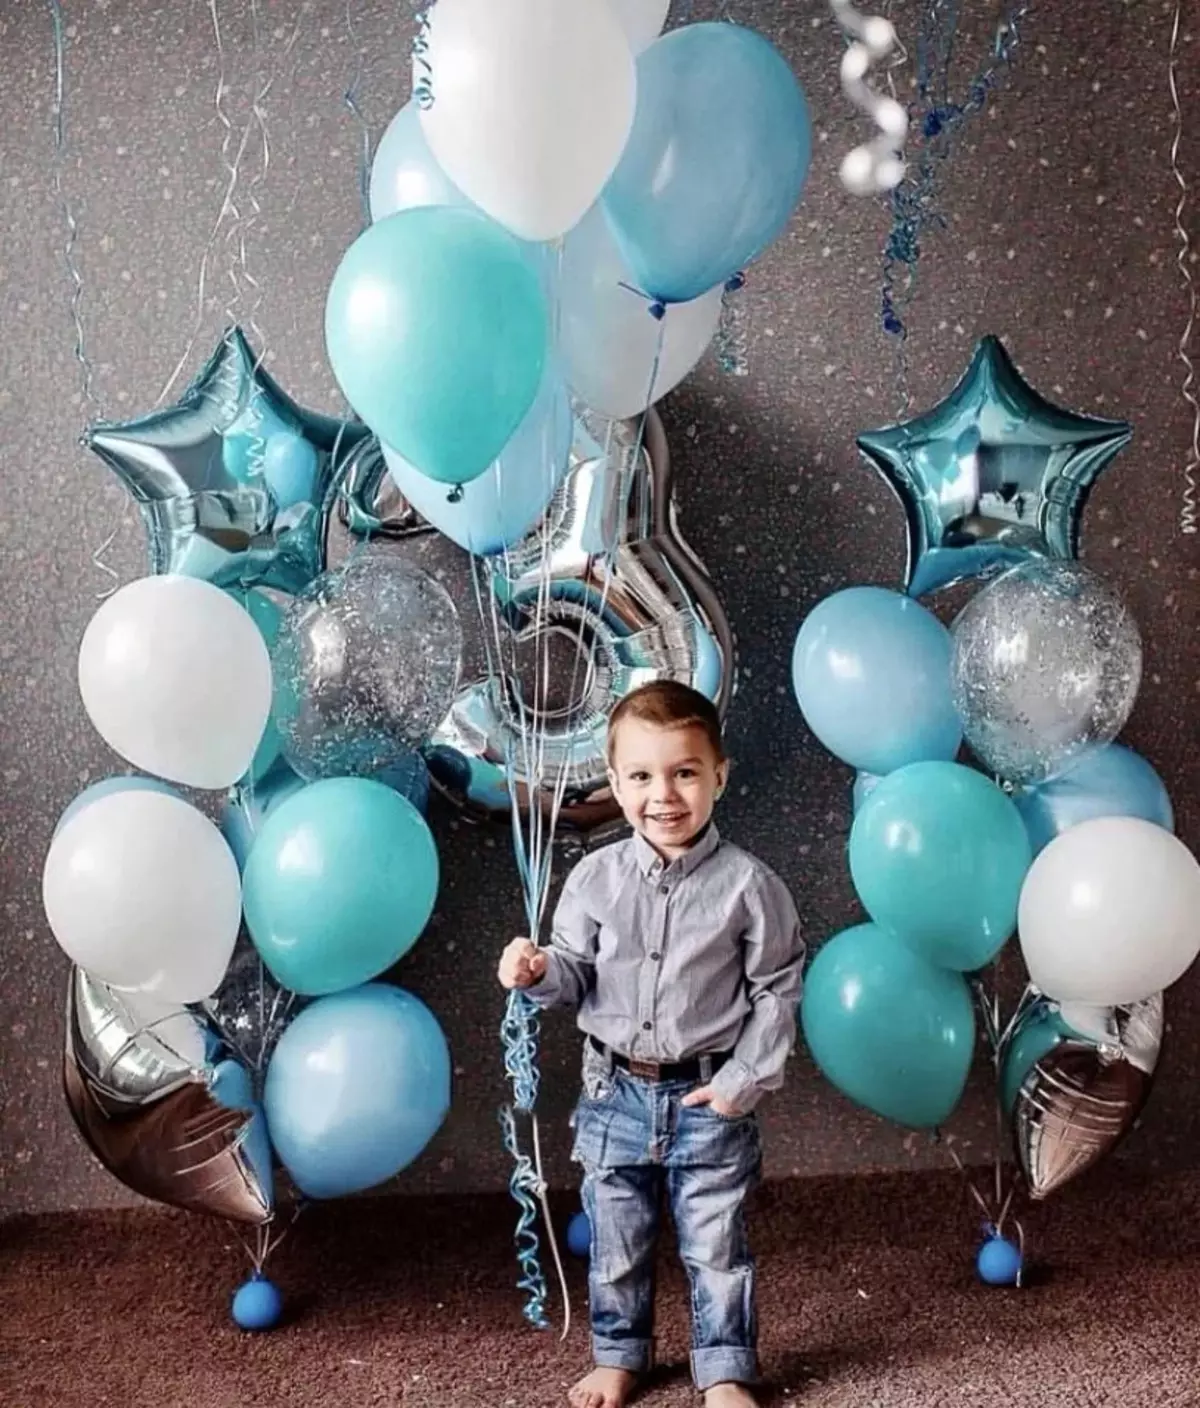 Оформлення дня народження для хлопчика: як прикрасити кімнату кулями для дитини 2-3 роки, 4-5, 6-7 і 8-10 років? 24617_3